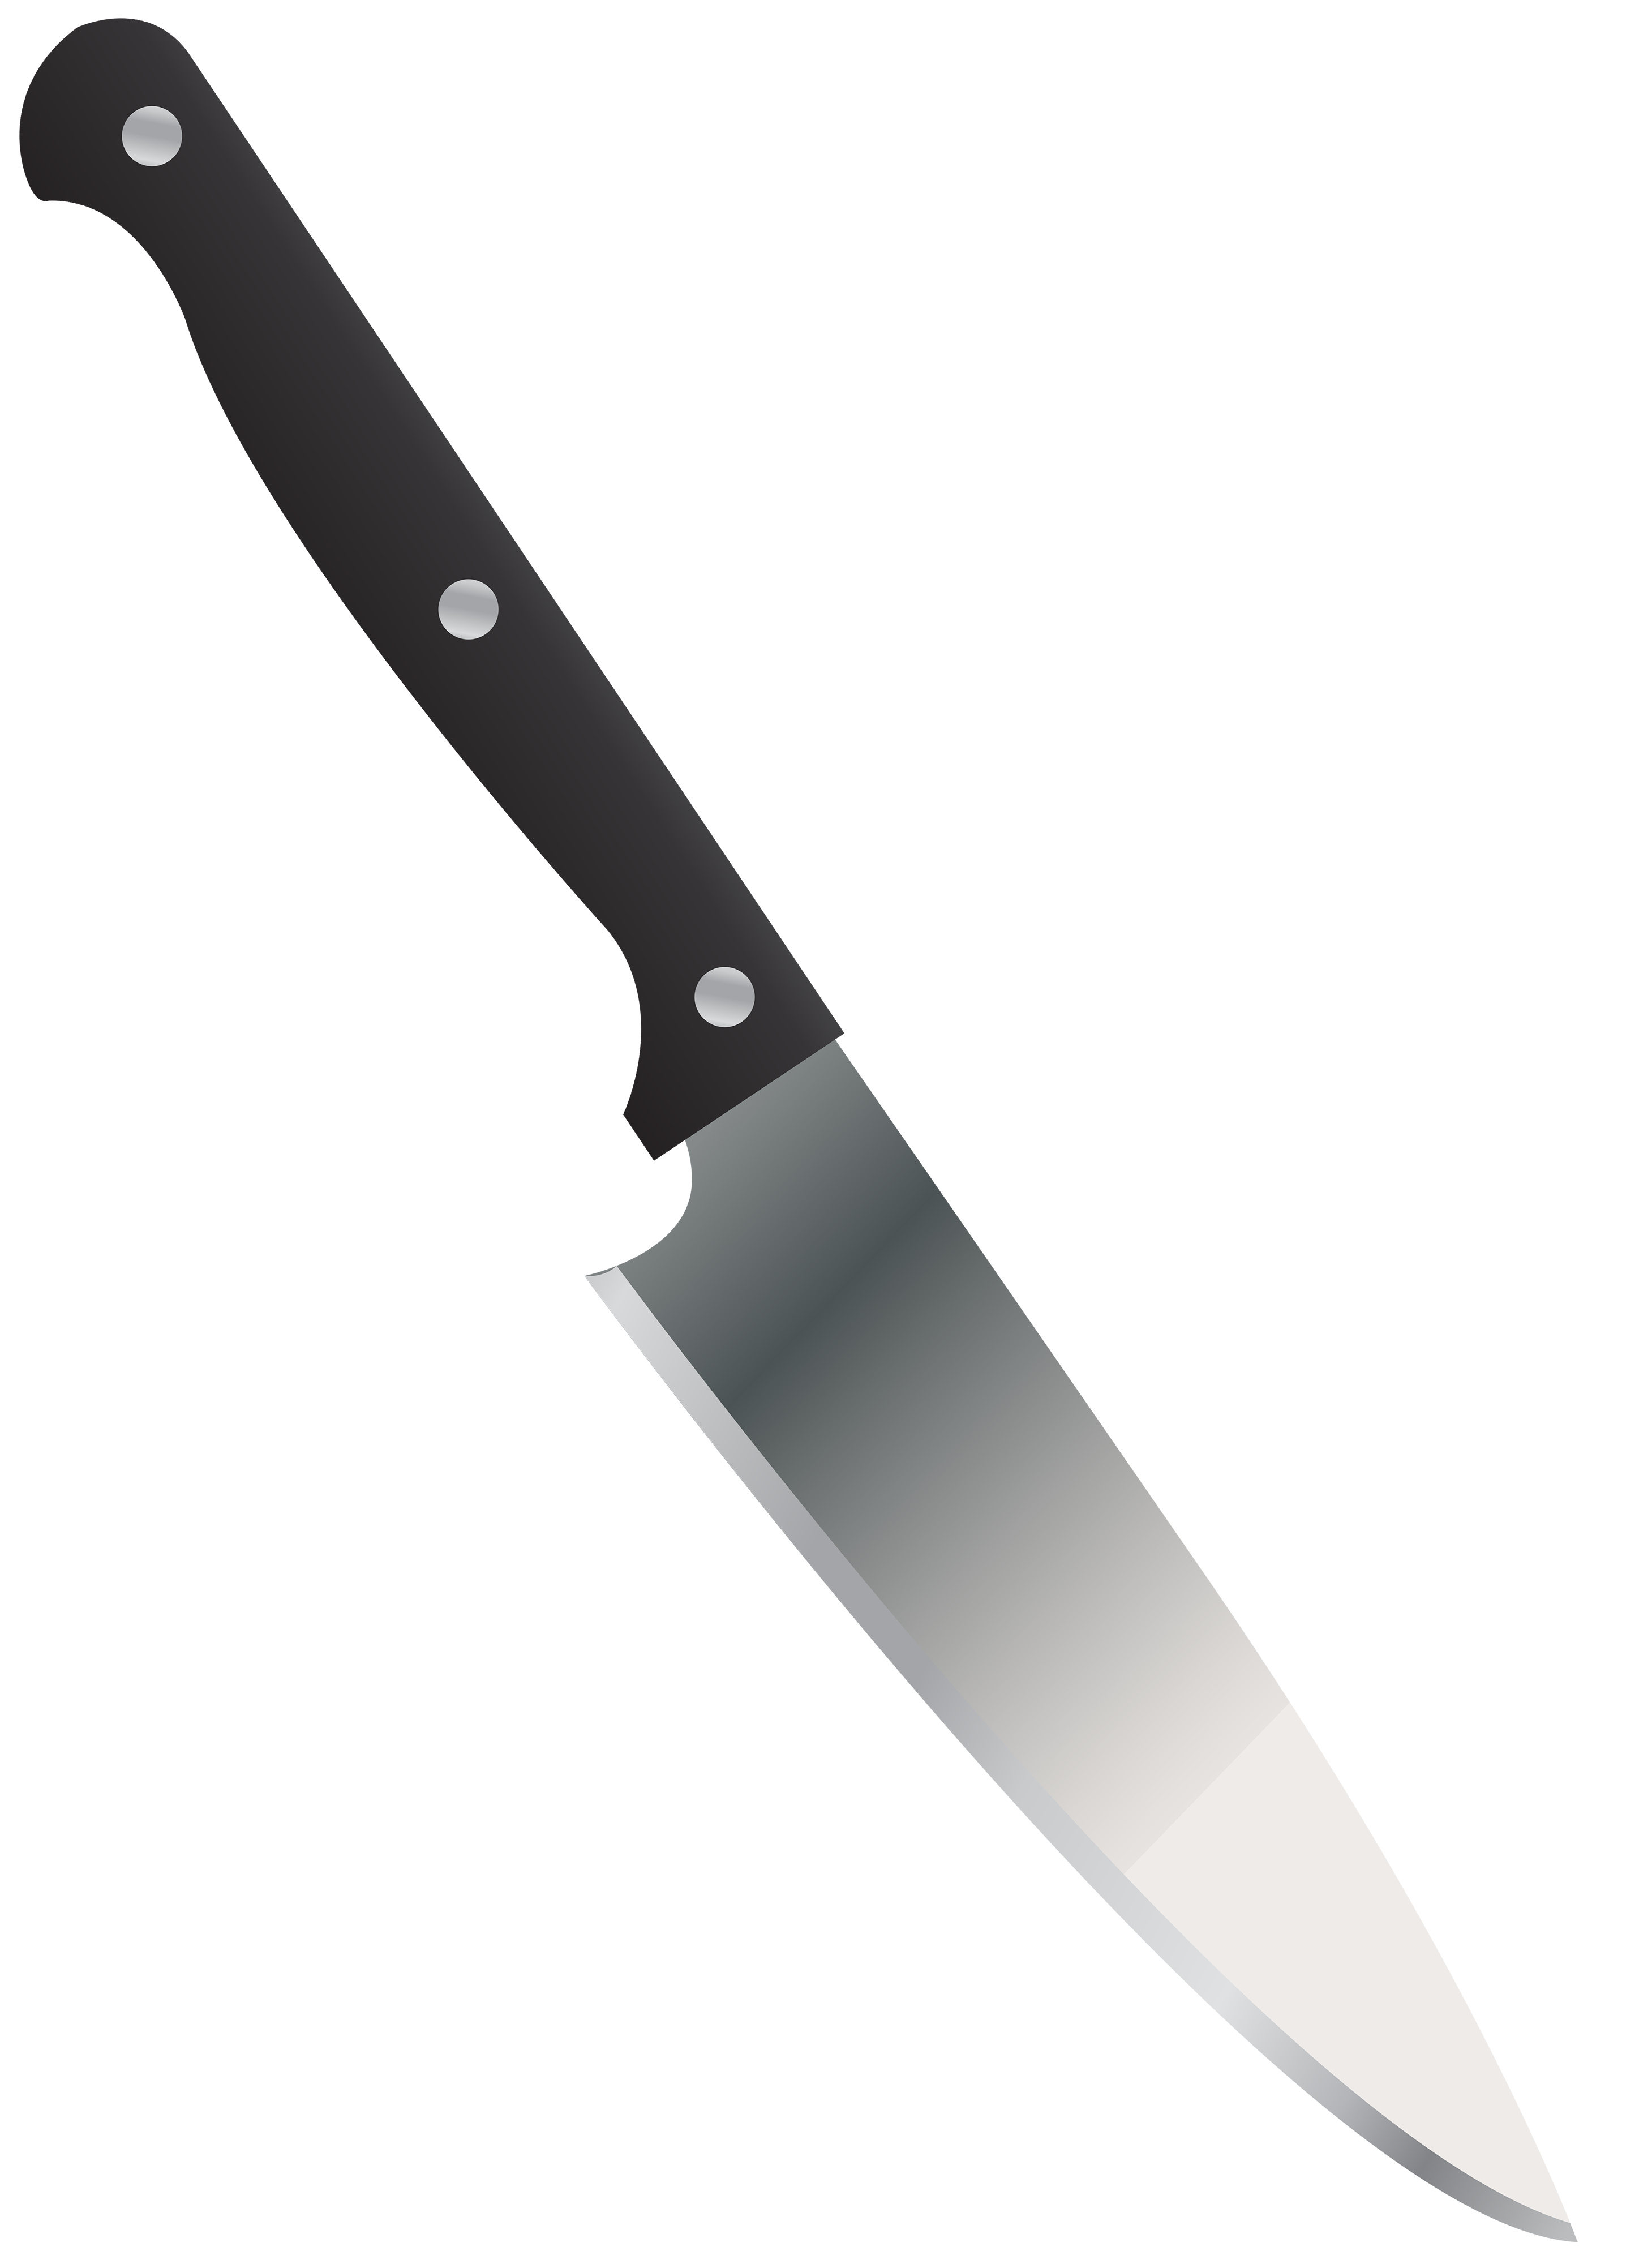 clipart kitchen knife - photo #48